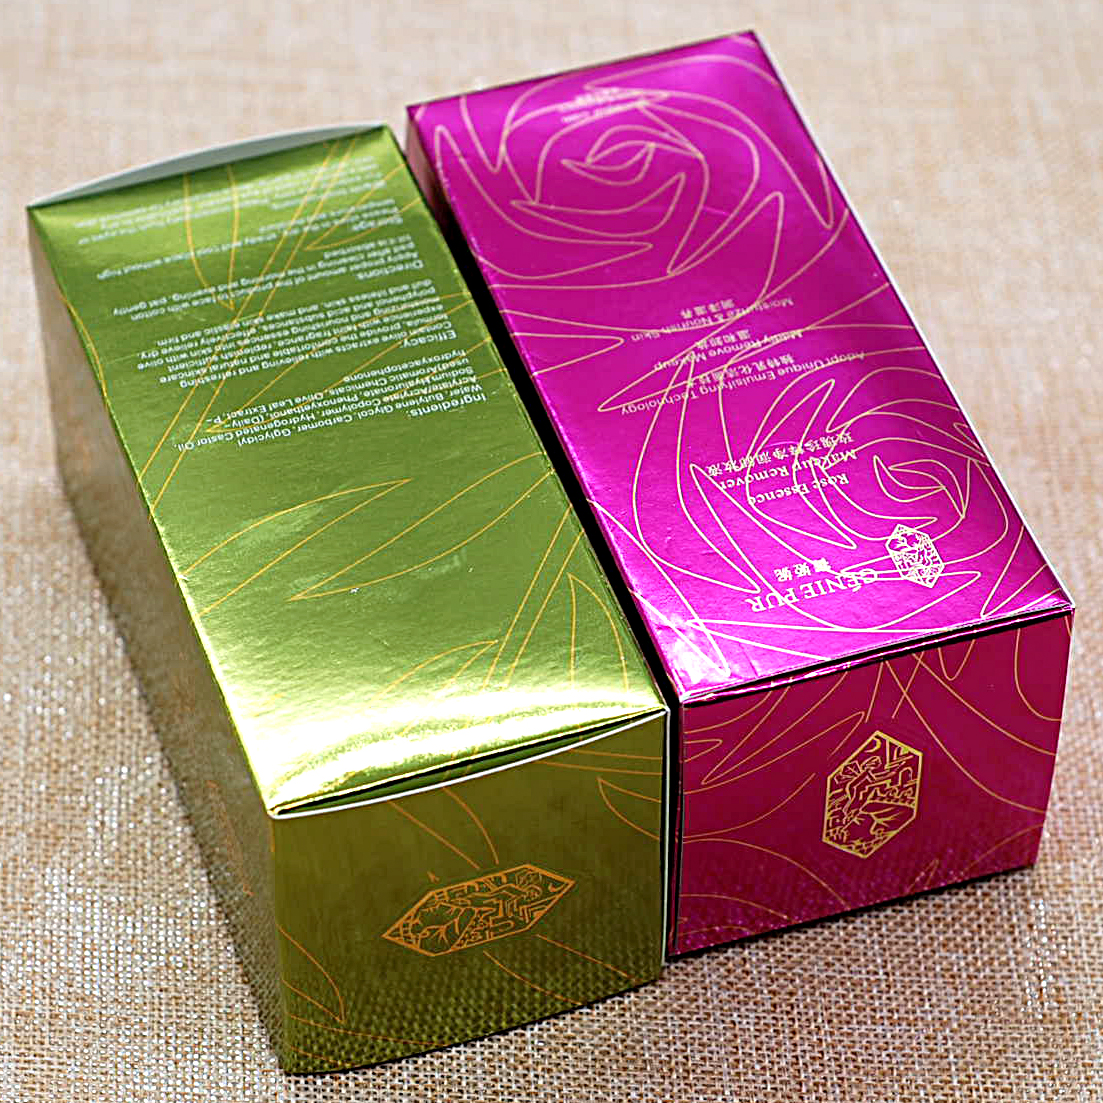 纸盒包装通用包装 礼品盒 食品包装盒 茶叶盒 首饰盒 酒盒 月饼盒 糖果盒 收纳盒 毛巾盒 纸盒包装